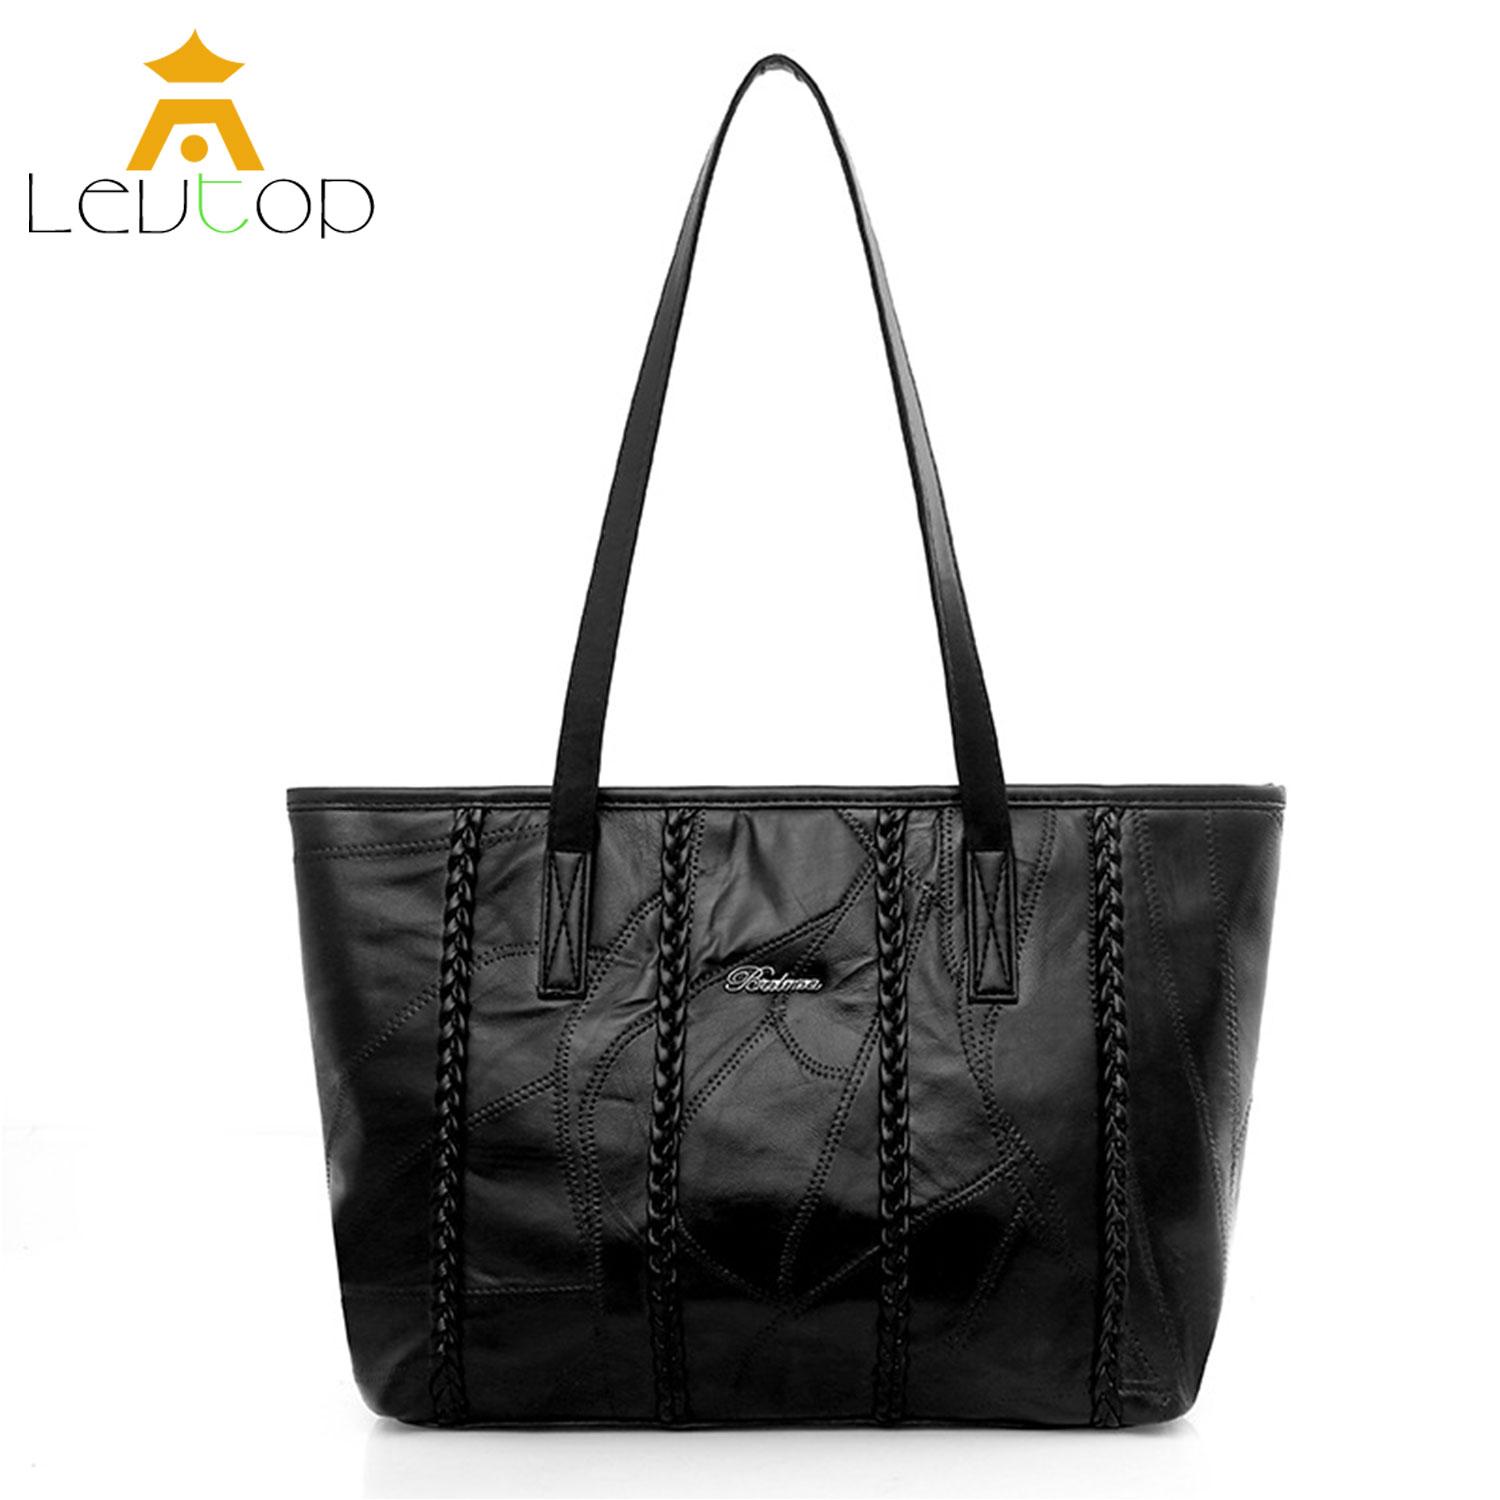  ลำปาง LEVTOP กระเป๋าผู้หญิงแบบสะพายไหล่ลายสก๊อต สายกระเป๋าทรงสี่เหลี่ยมสะพายไหล่กระเป๋า Handbag Women Sling Tote Bags